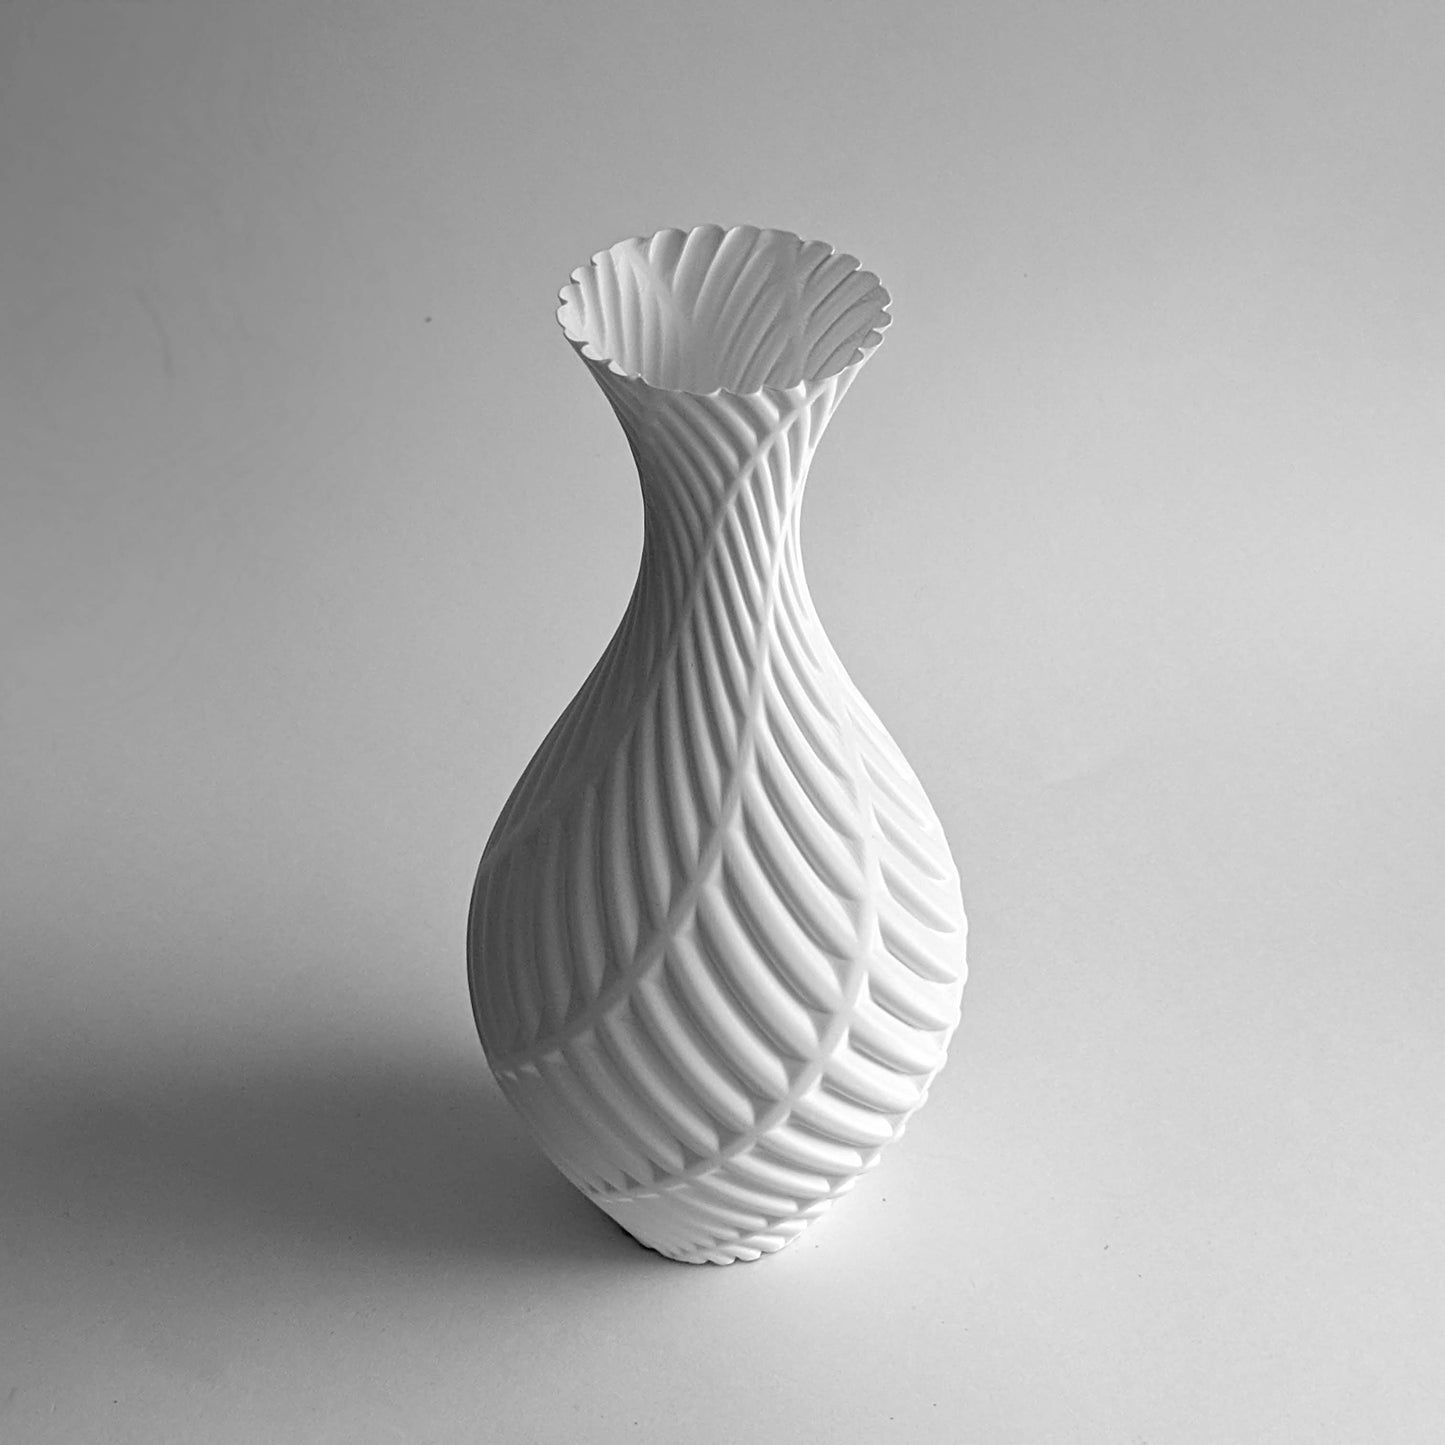 Fern 3D printed in white filament